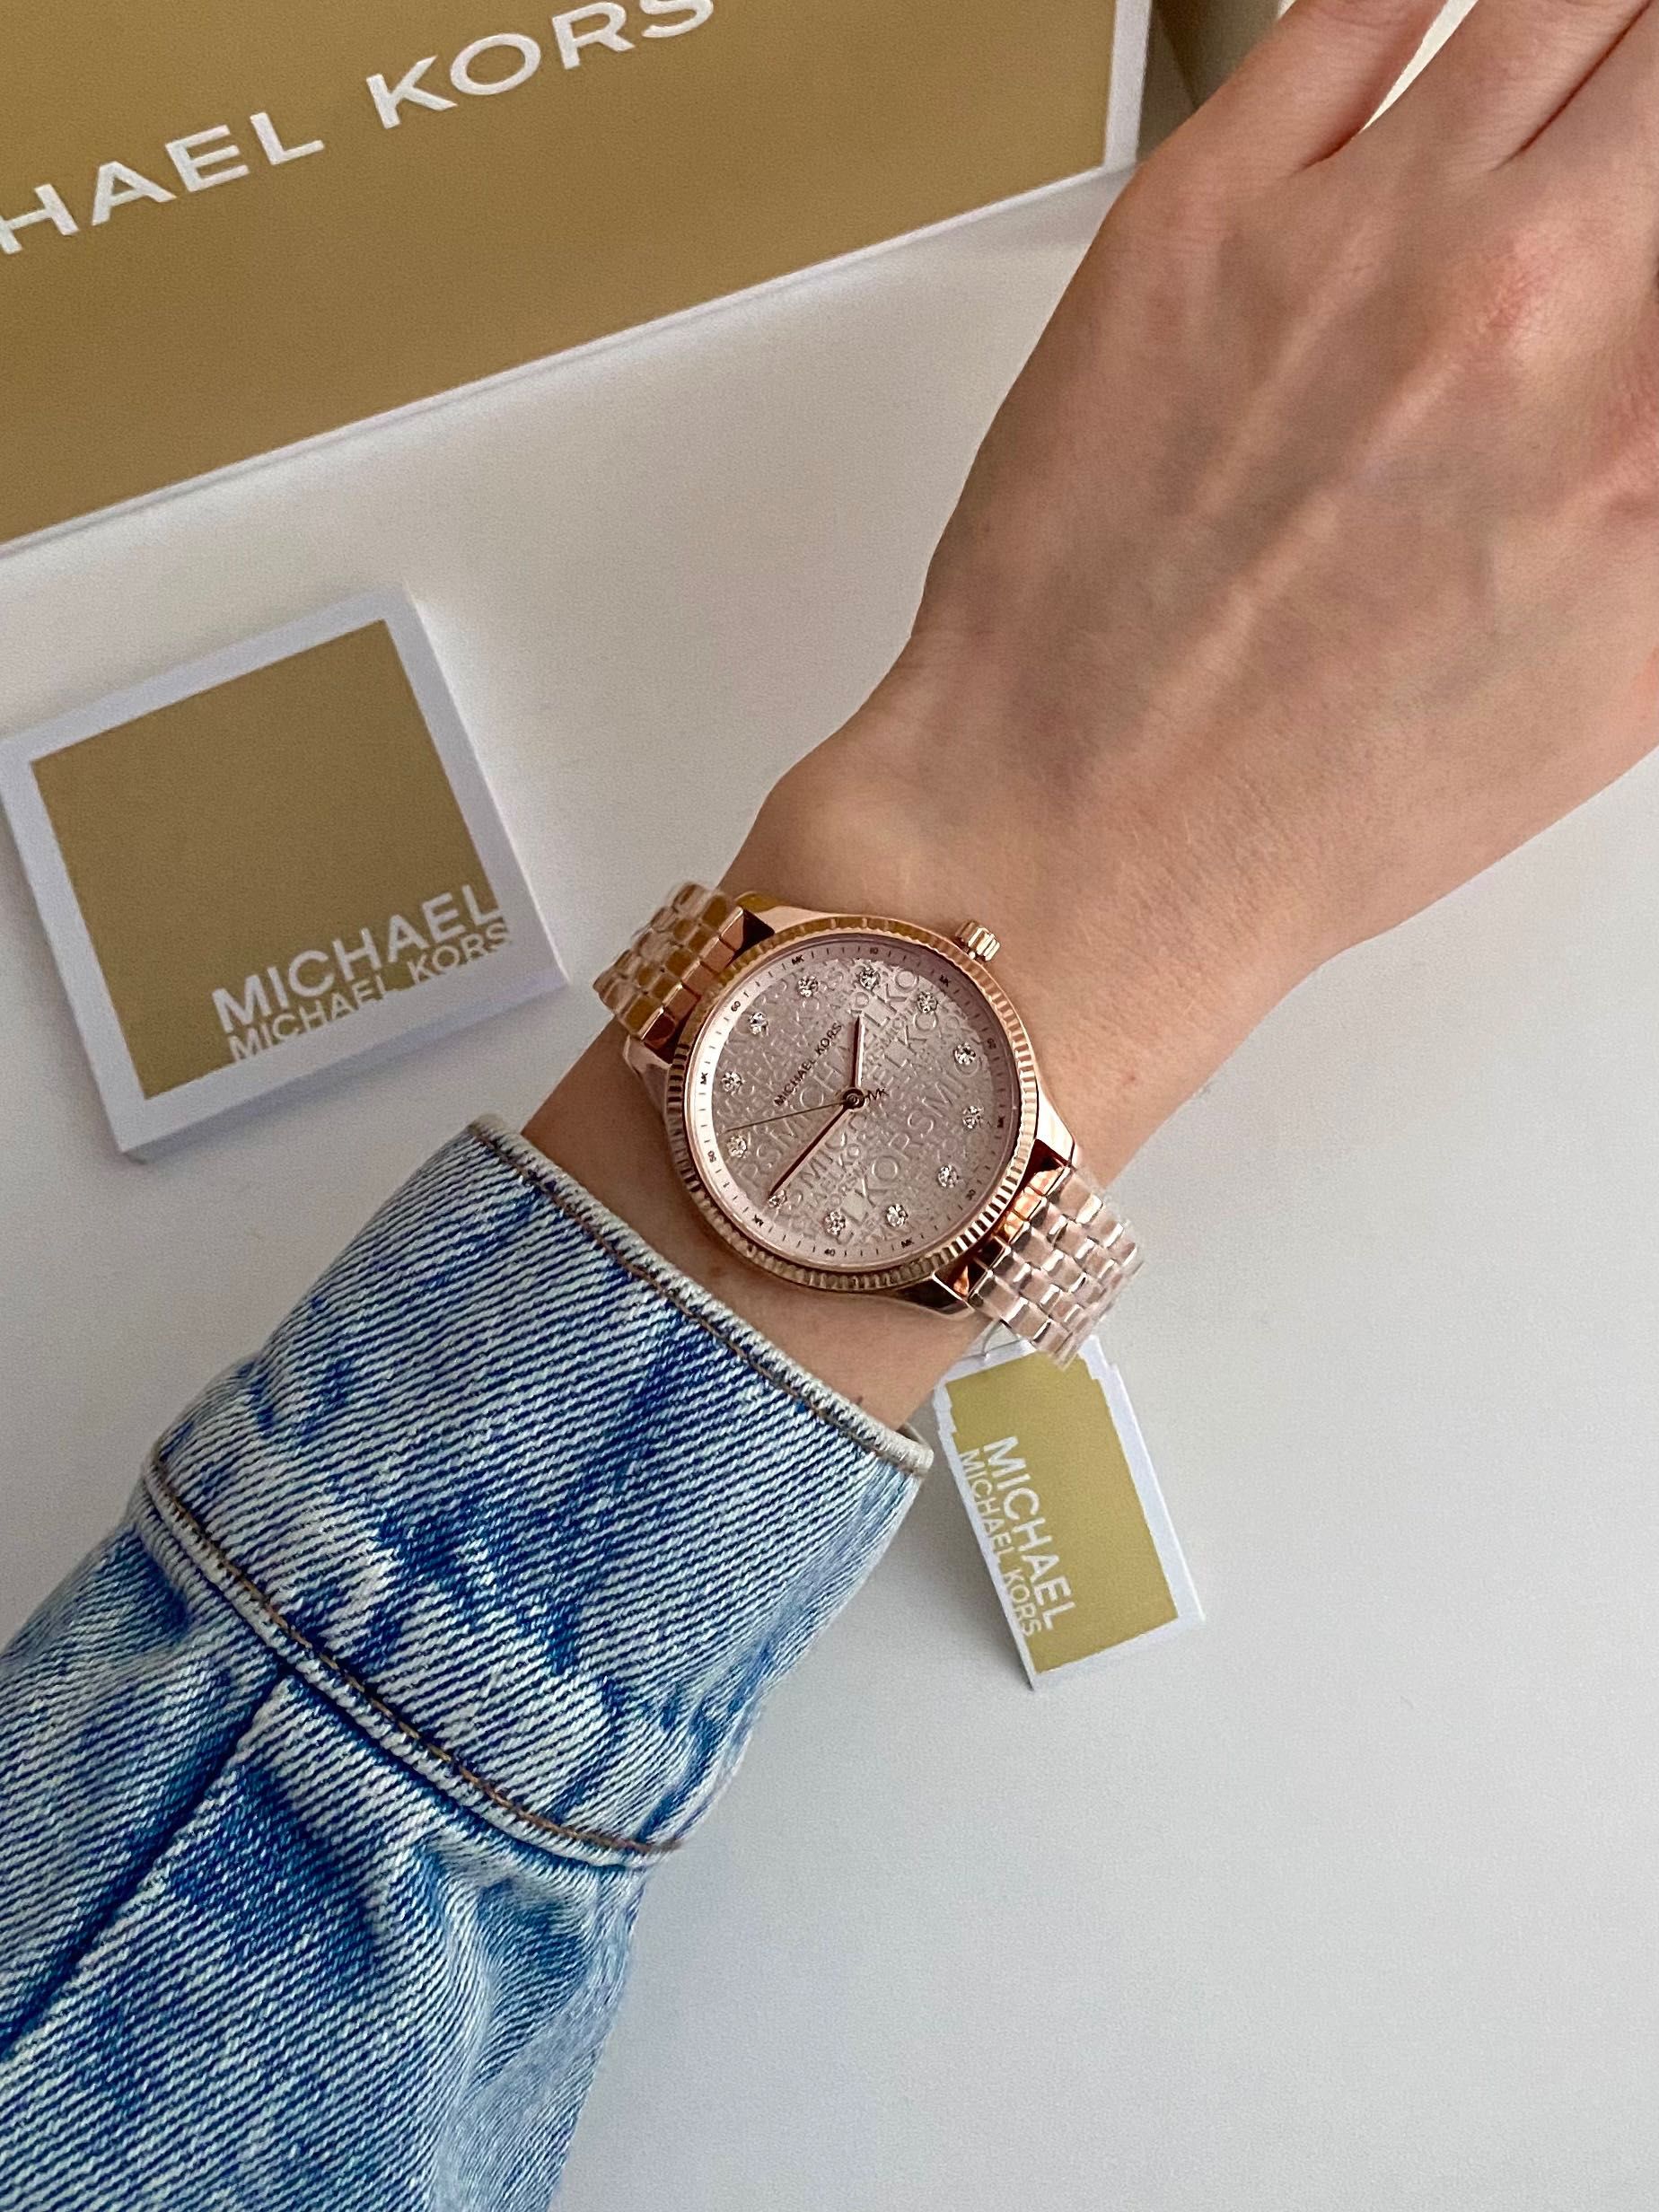 MICHAEL KORS Женские часы майкл корс жіночий годинник подарок девушке